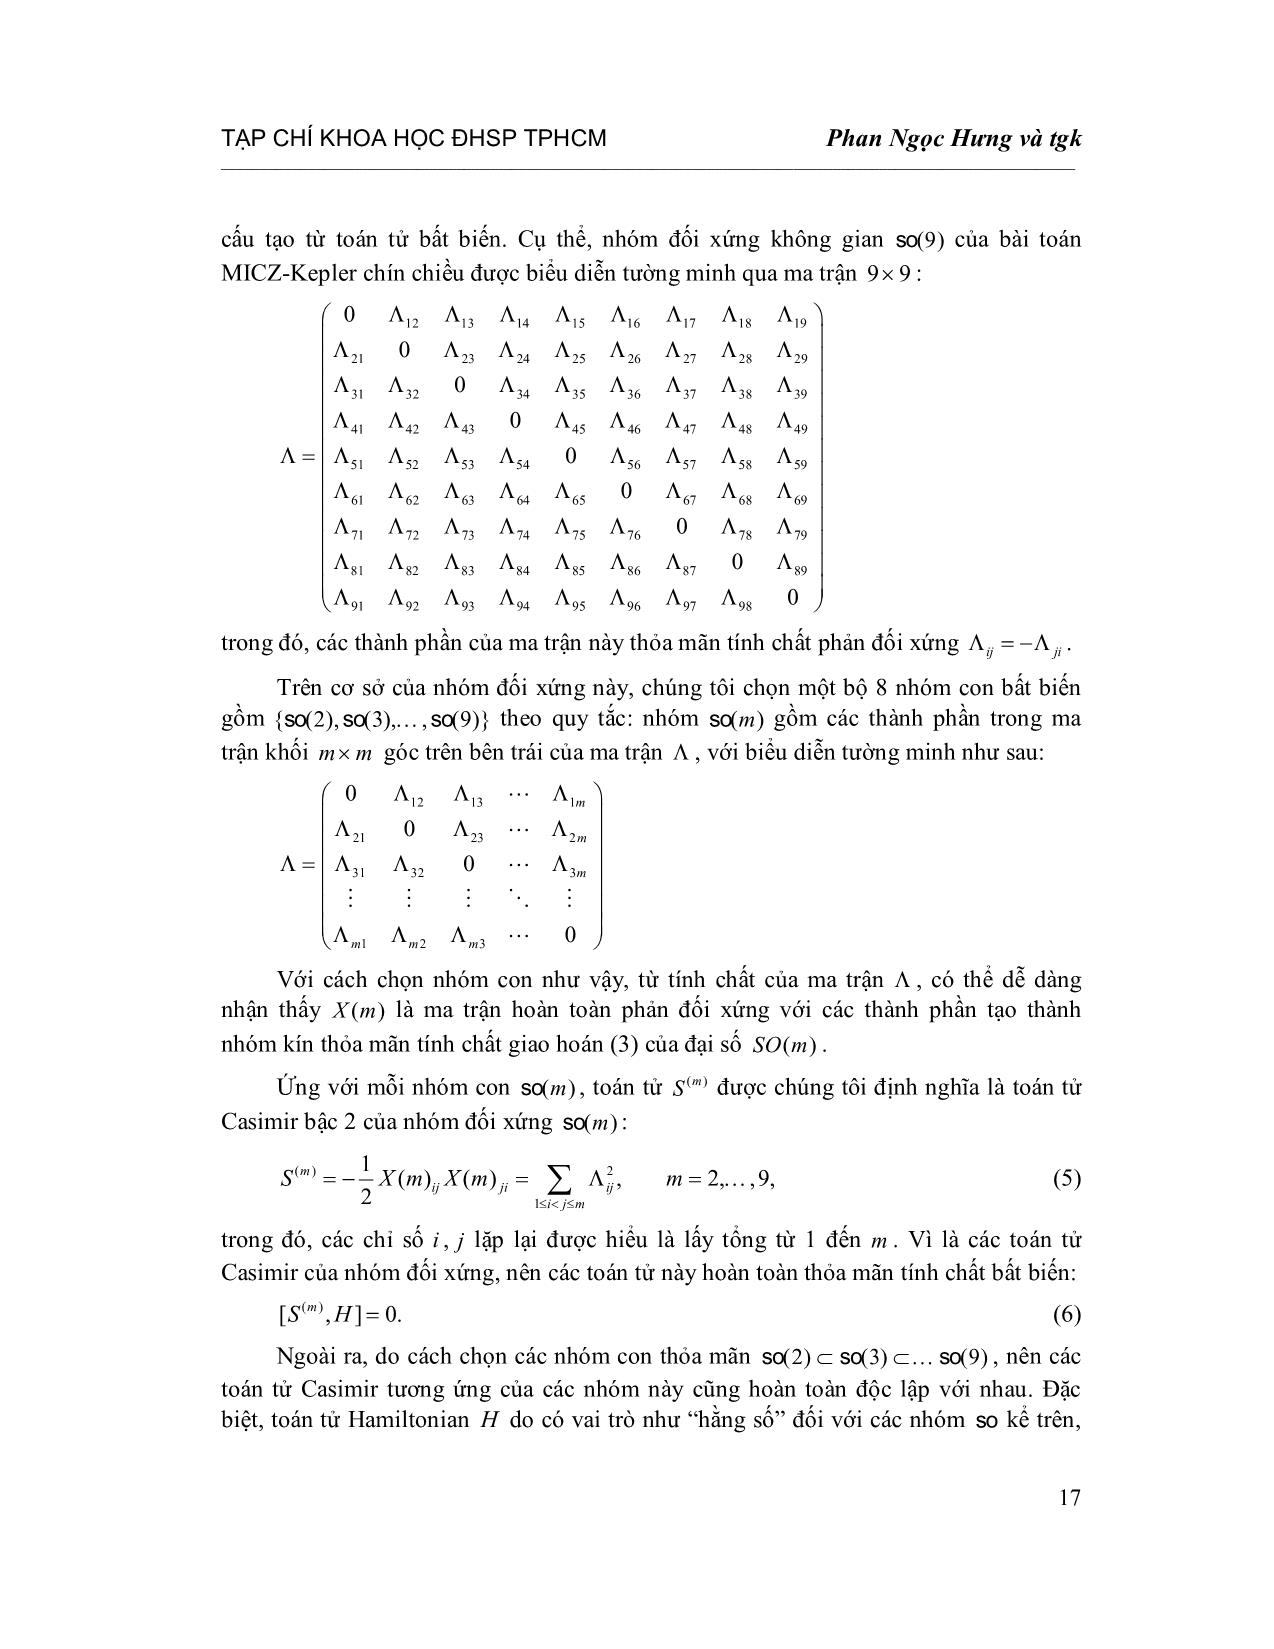 Tính siêu khả tích của bài toán Micz-Kepler chín chiều trang 5